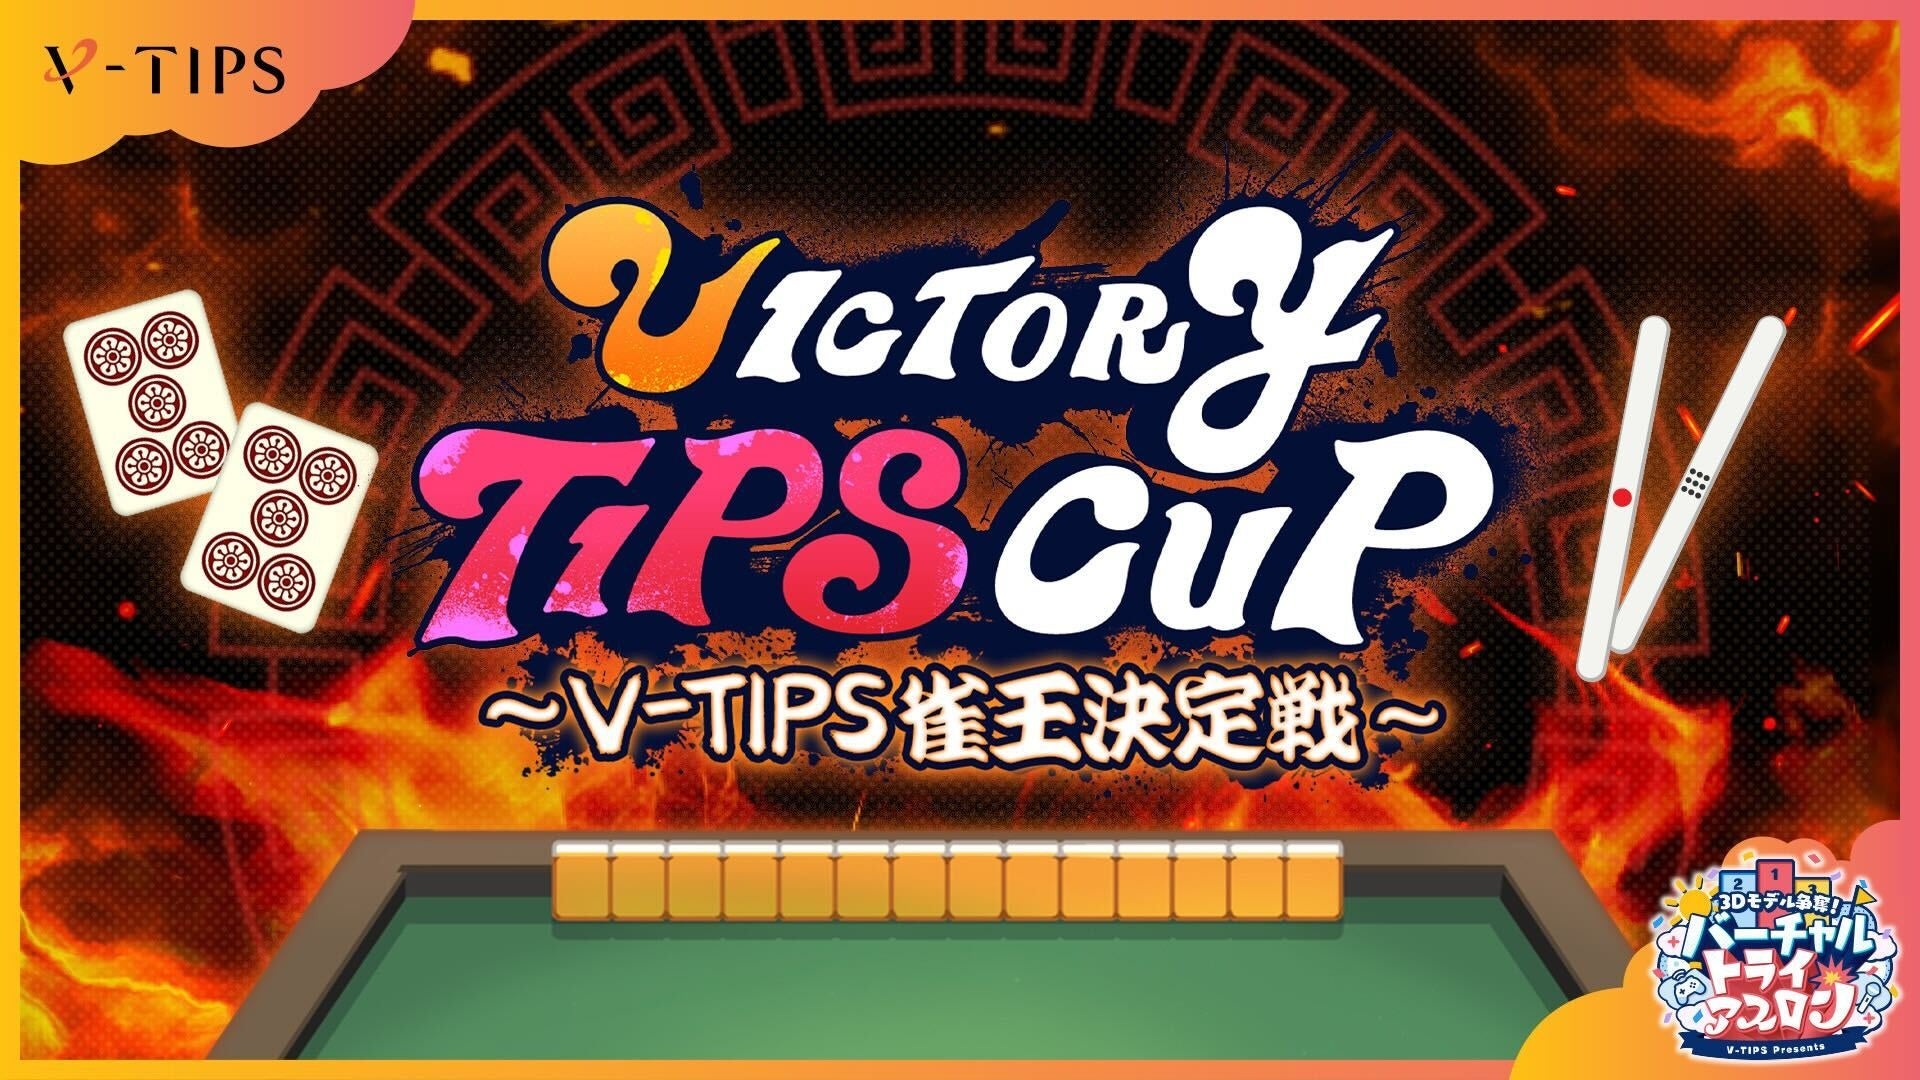 3/30(土)に開催される「VICTORY TIPS CUP～V-TIPS雀王決定戦～」の制作・運営をRATELが担当